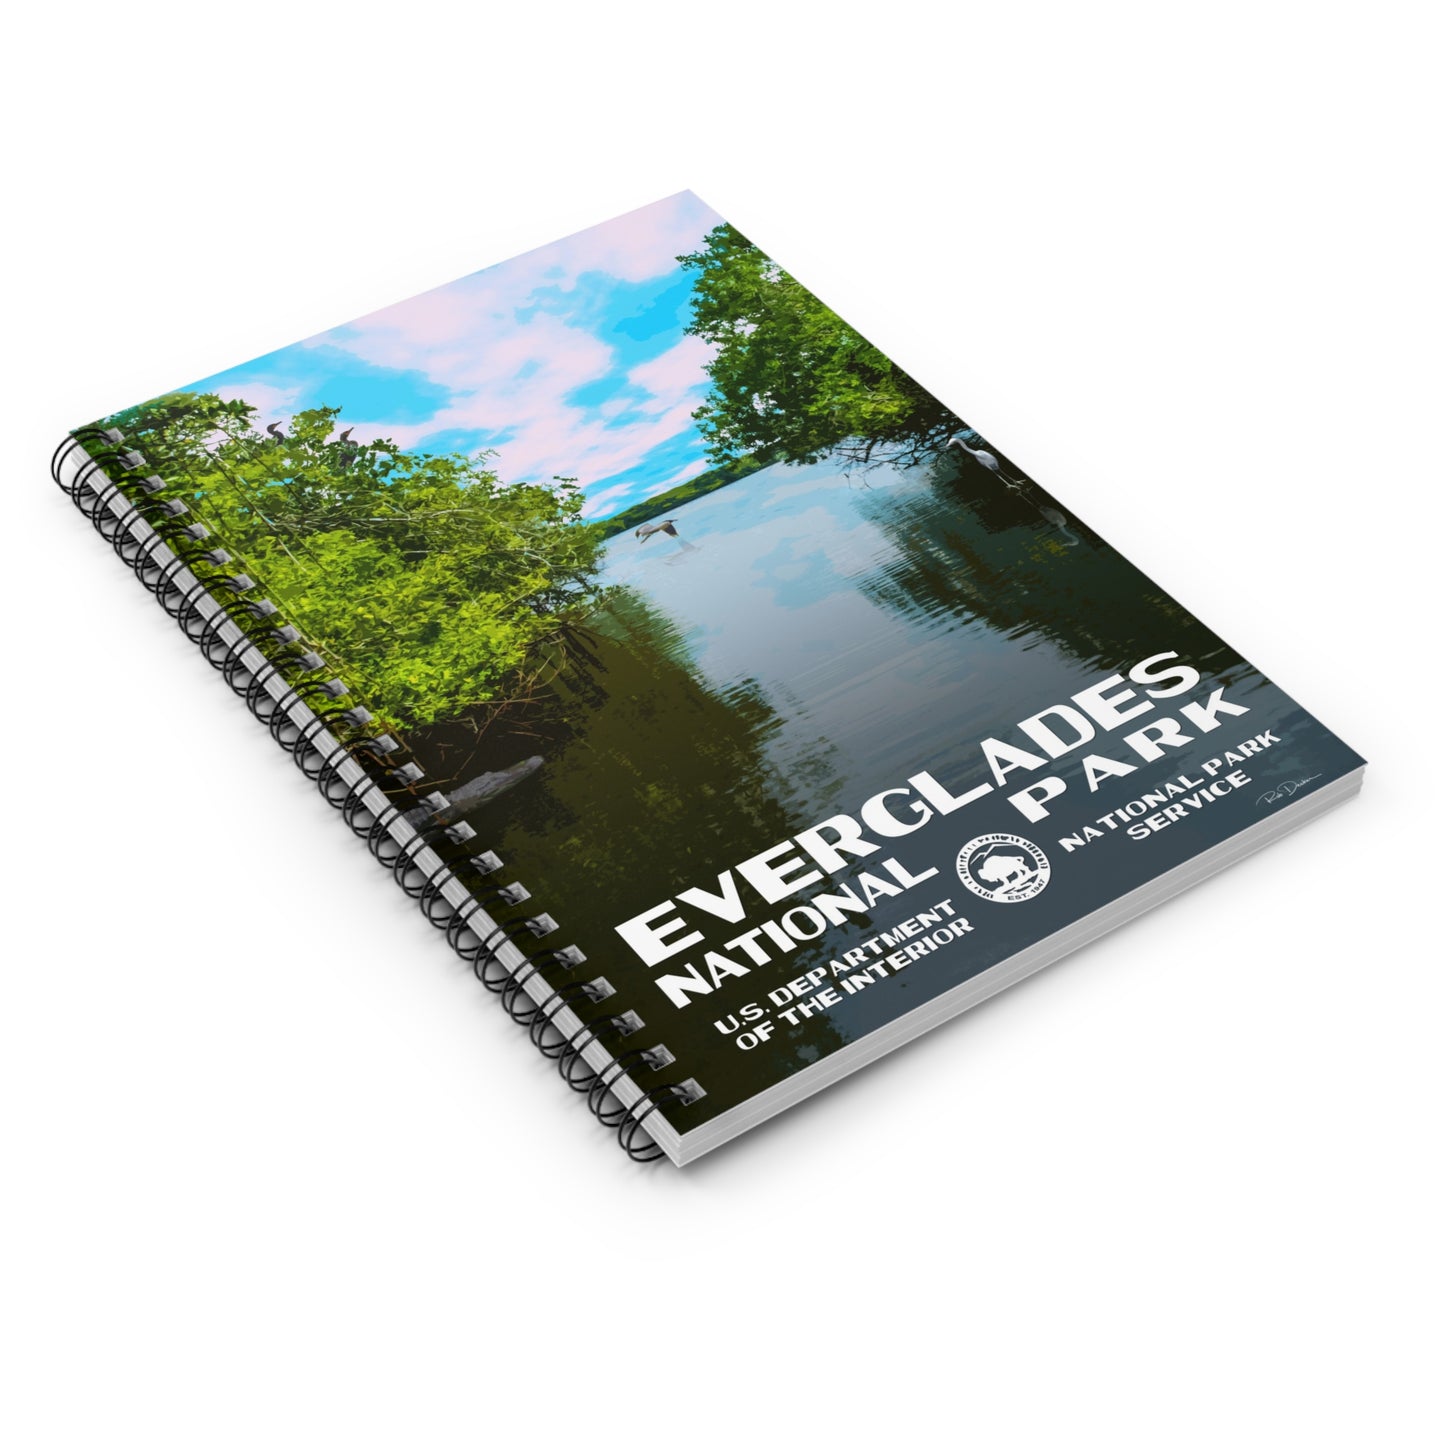 Everglades National Park Field Journal